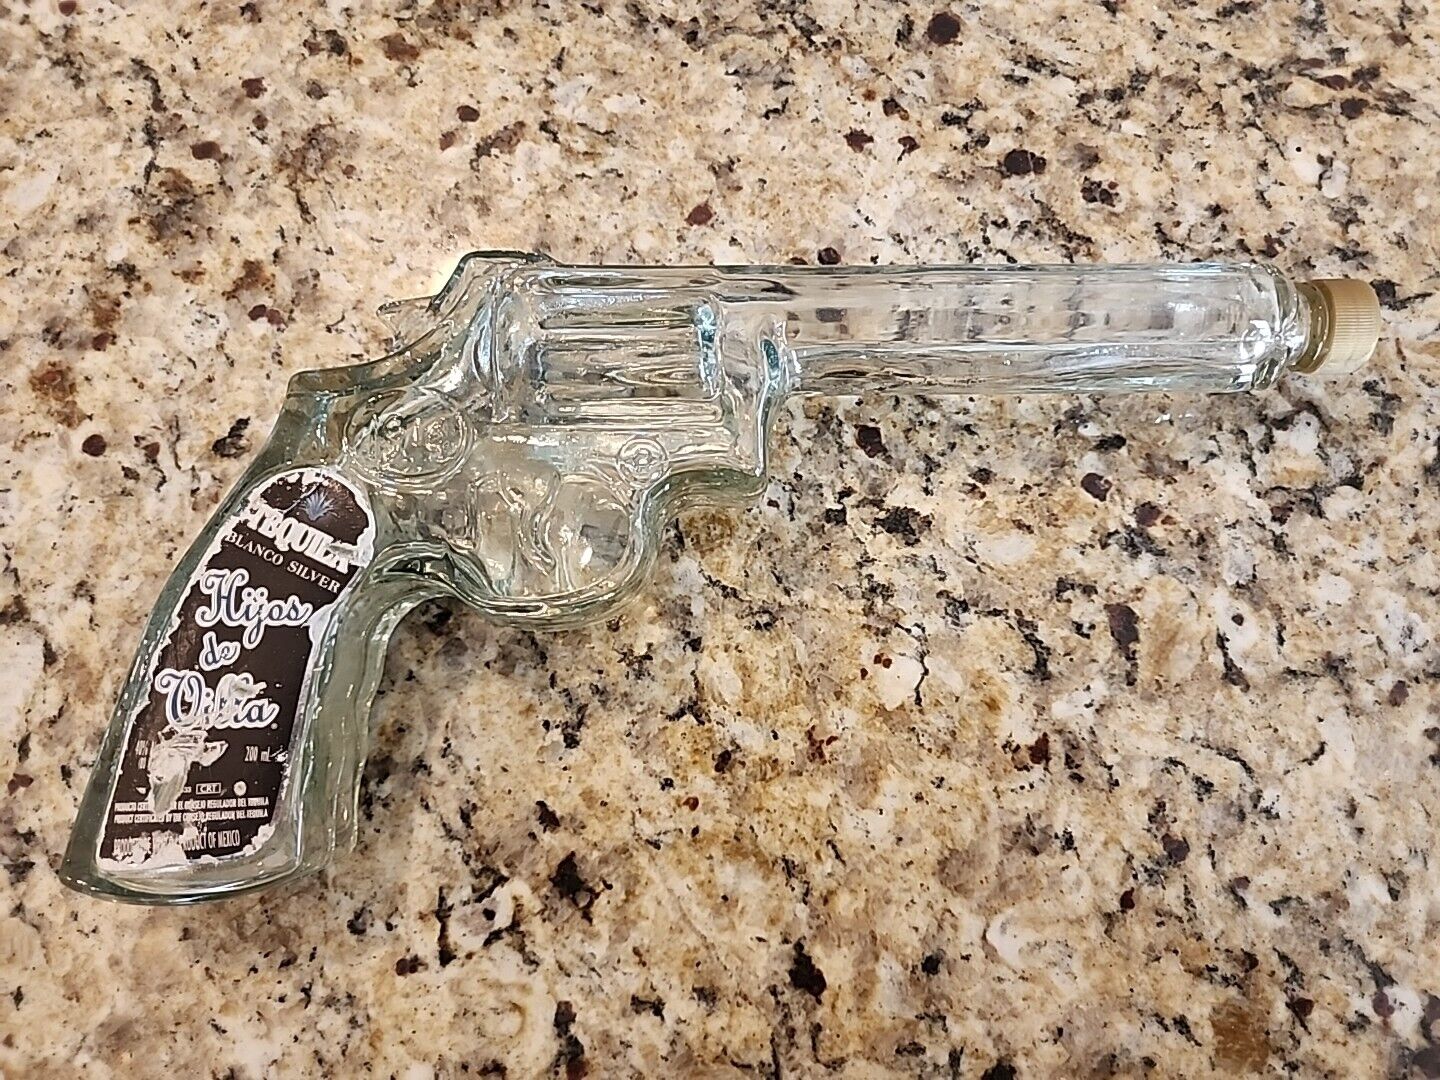 Hijos de Villa Blanco Silver Tequila Revolver Gun Shaped Bottle Empty 